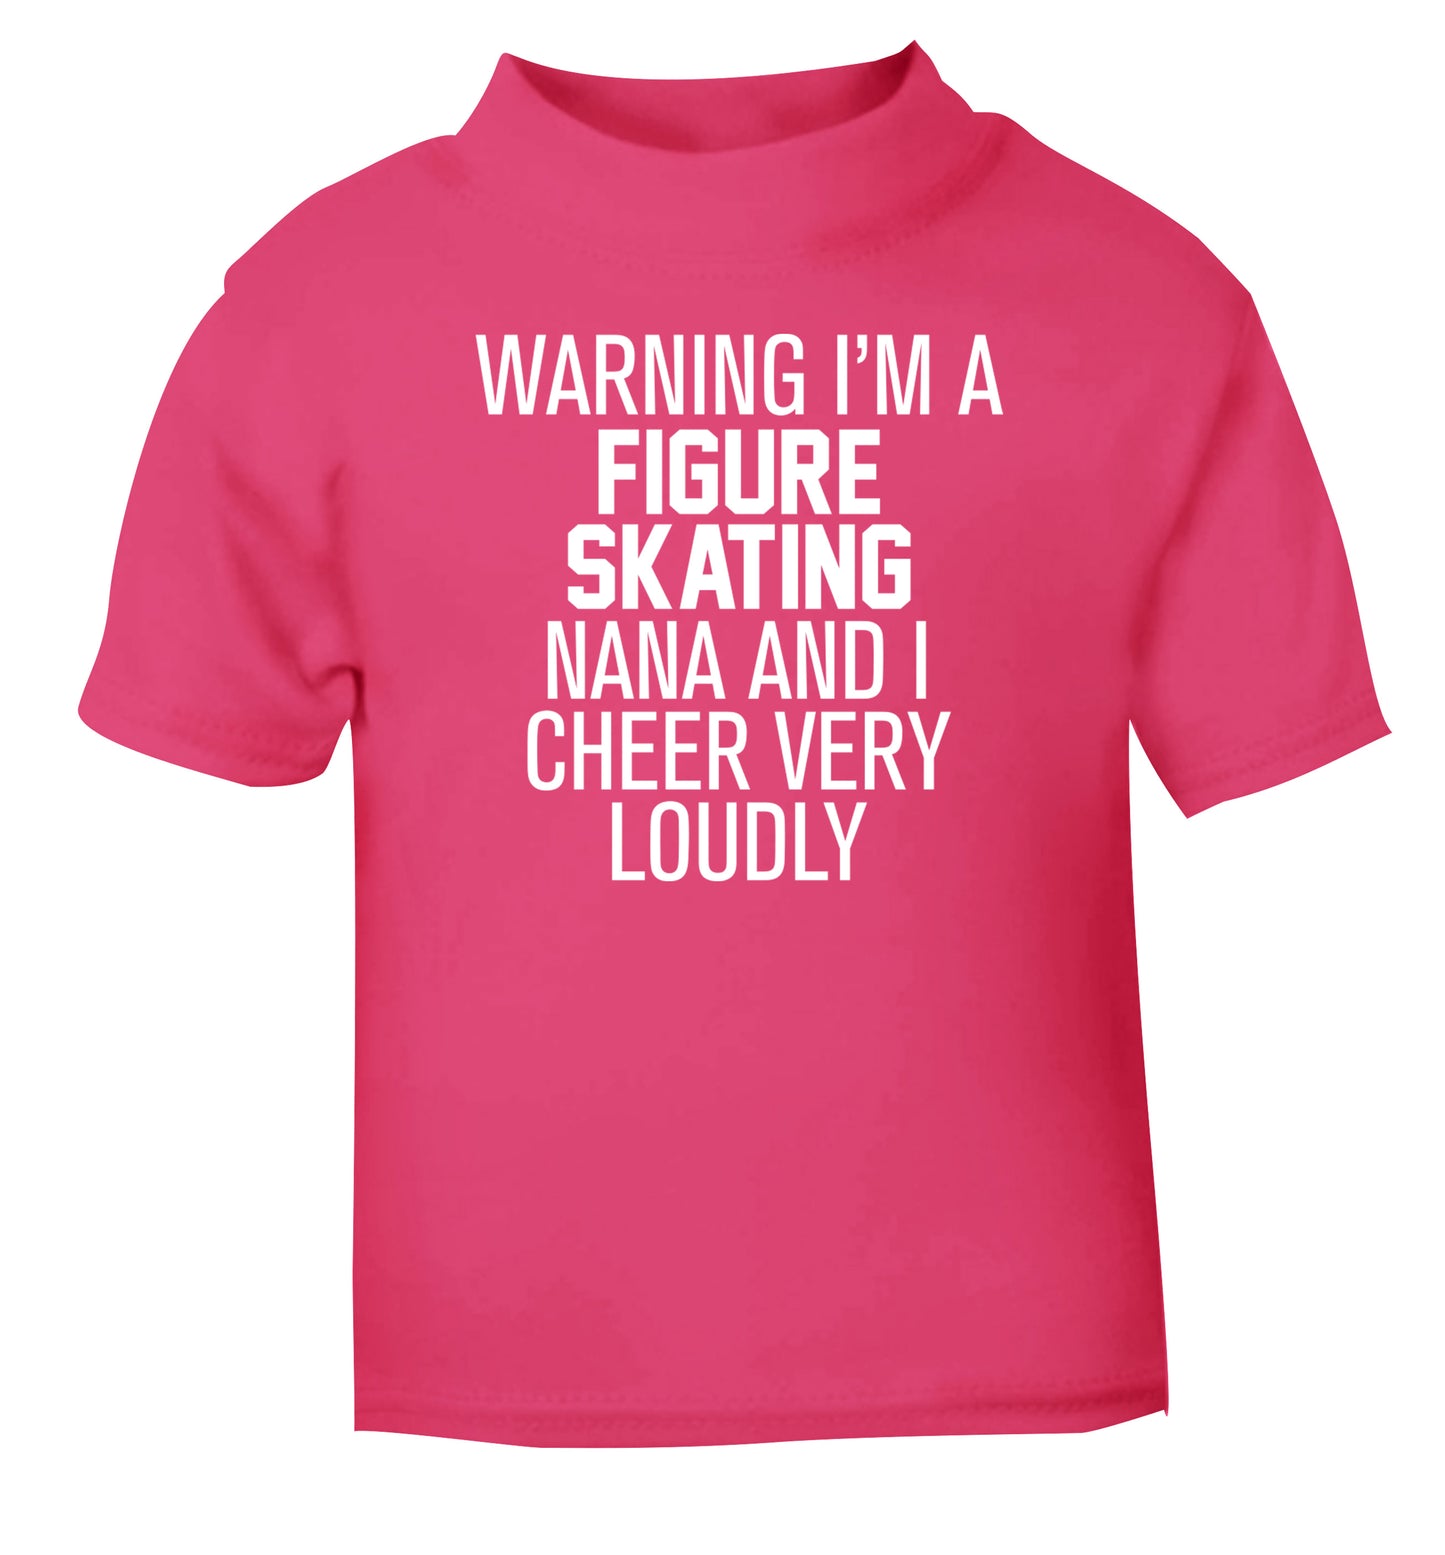 Warning I'm a figure skating nana and I cheer very loudly pink Baby Toddler Tshirt 2 Years